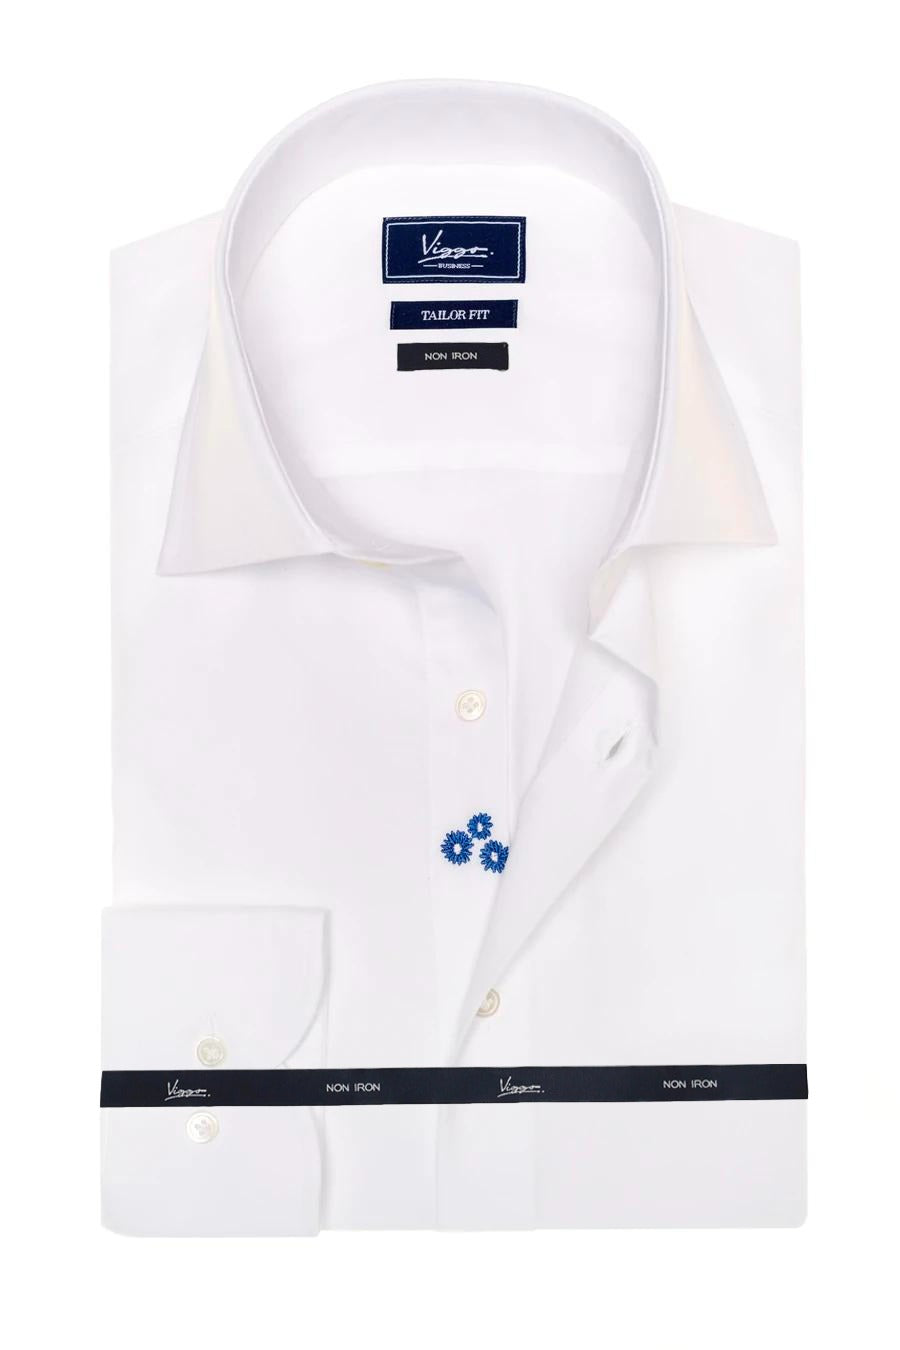 Camicia bianca no stiro con fiore nascosto blu